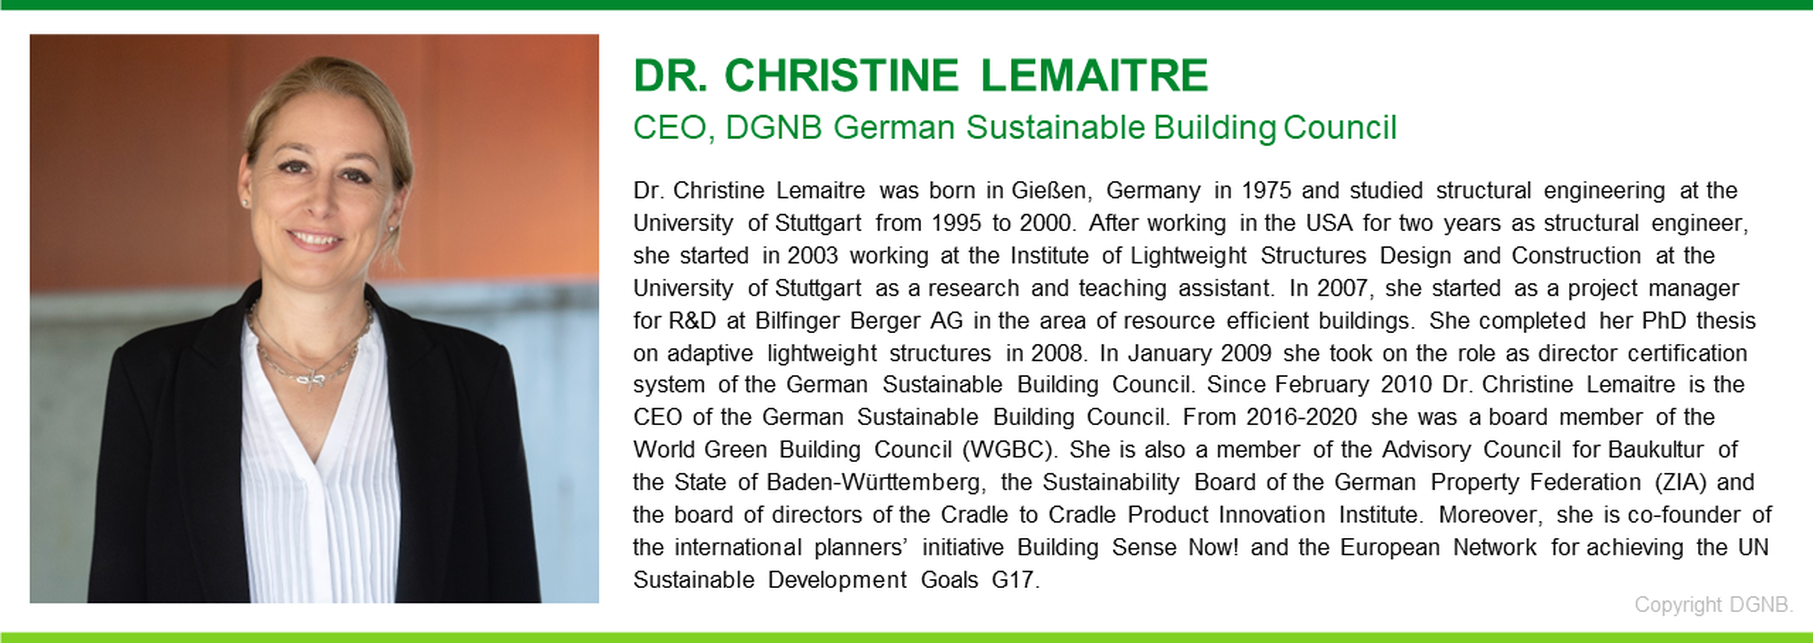 Dr. Christine Lemaitre
